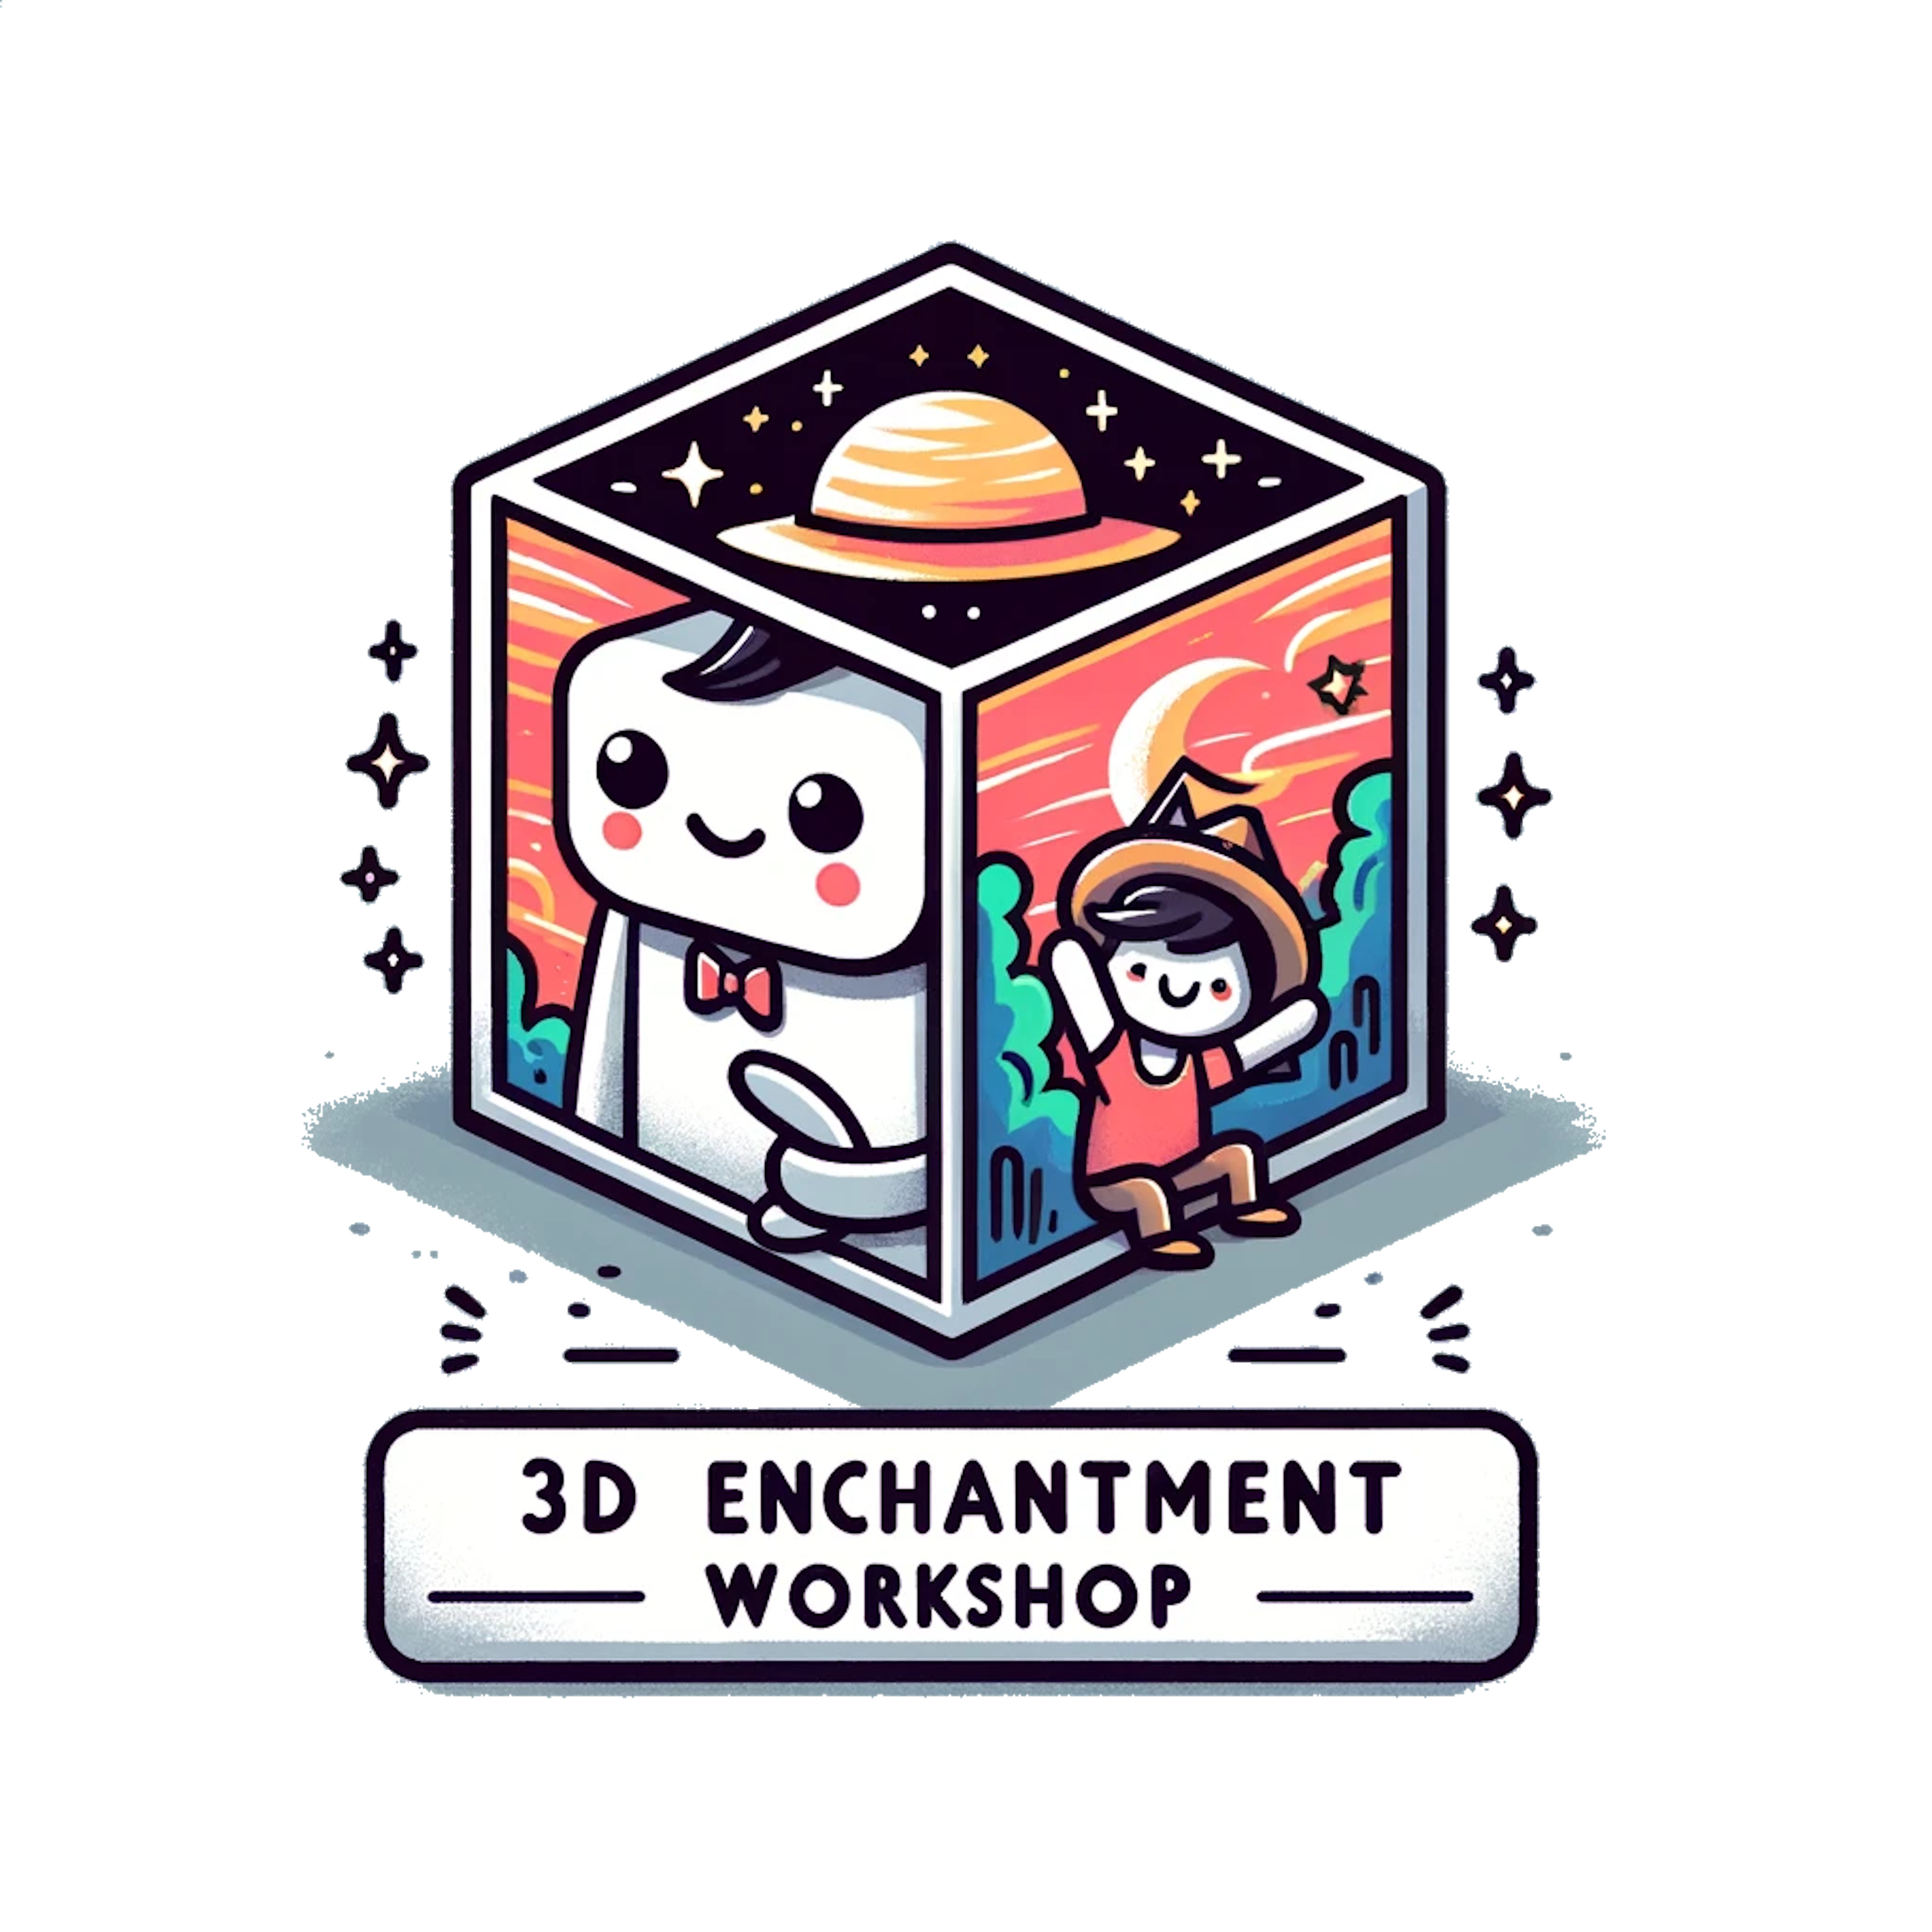 3D Enchantment Workshop